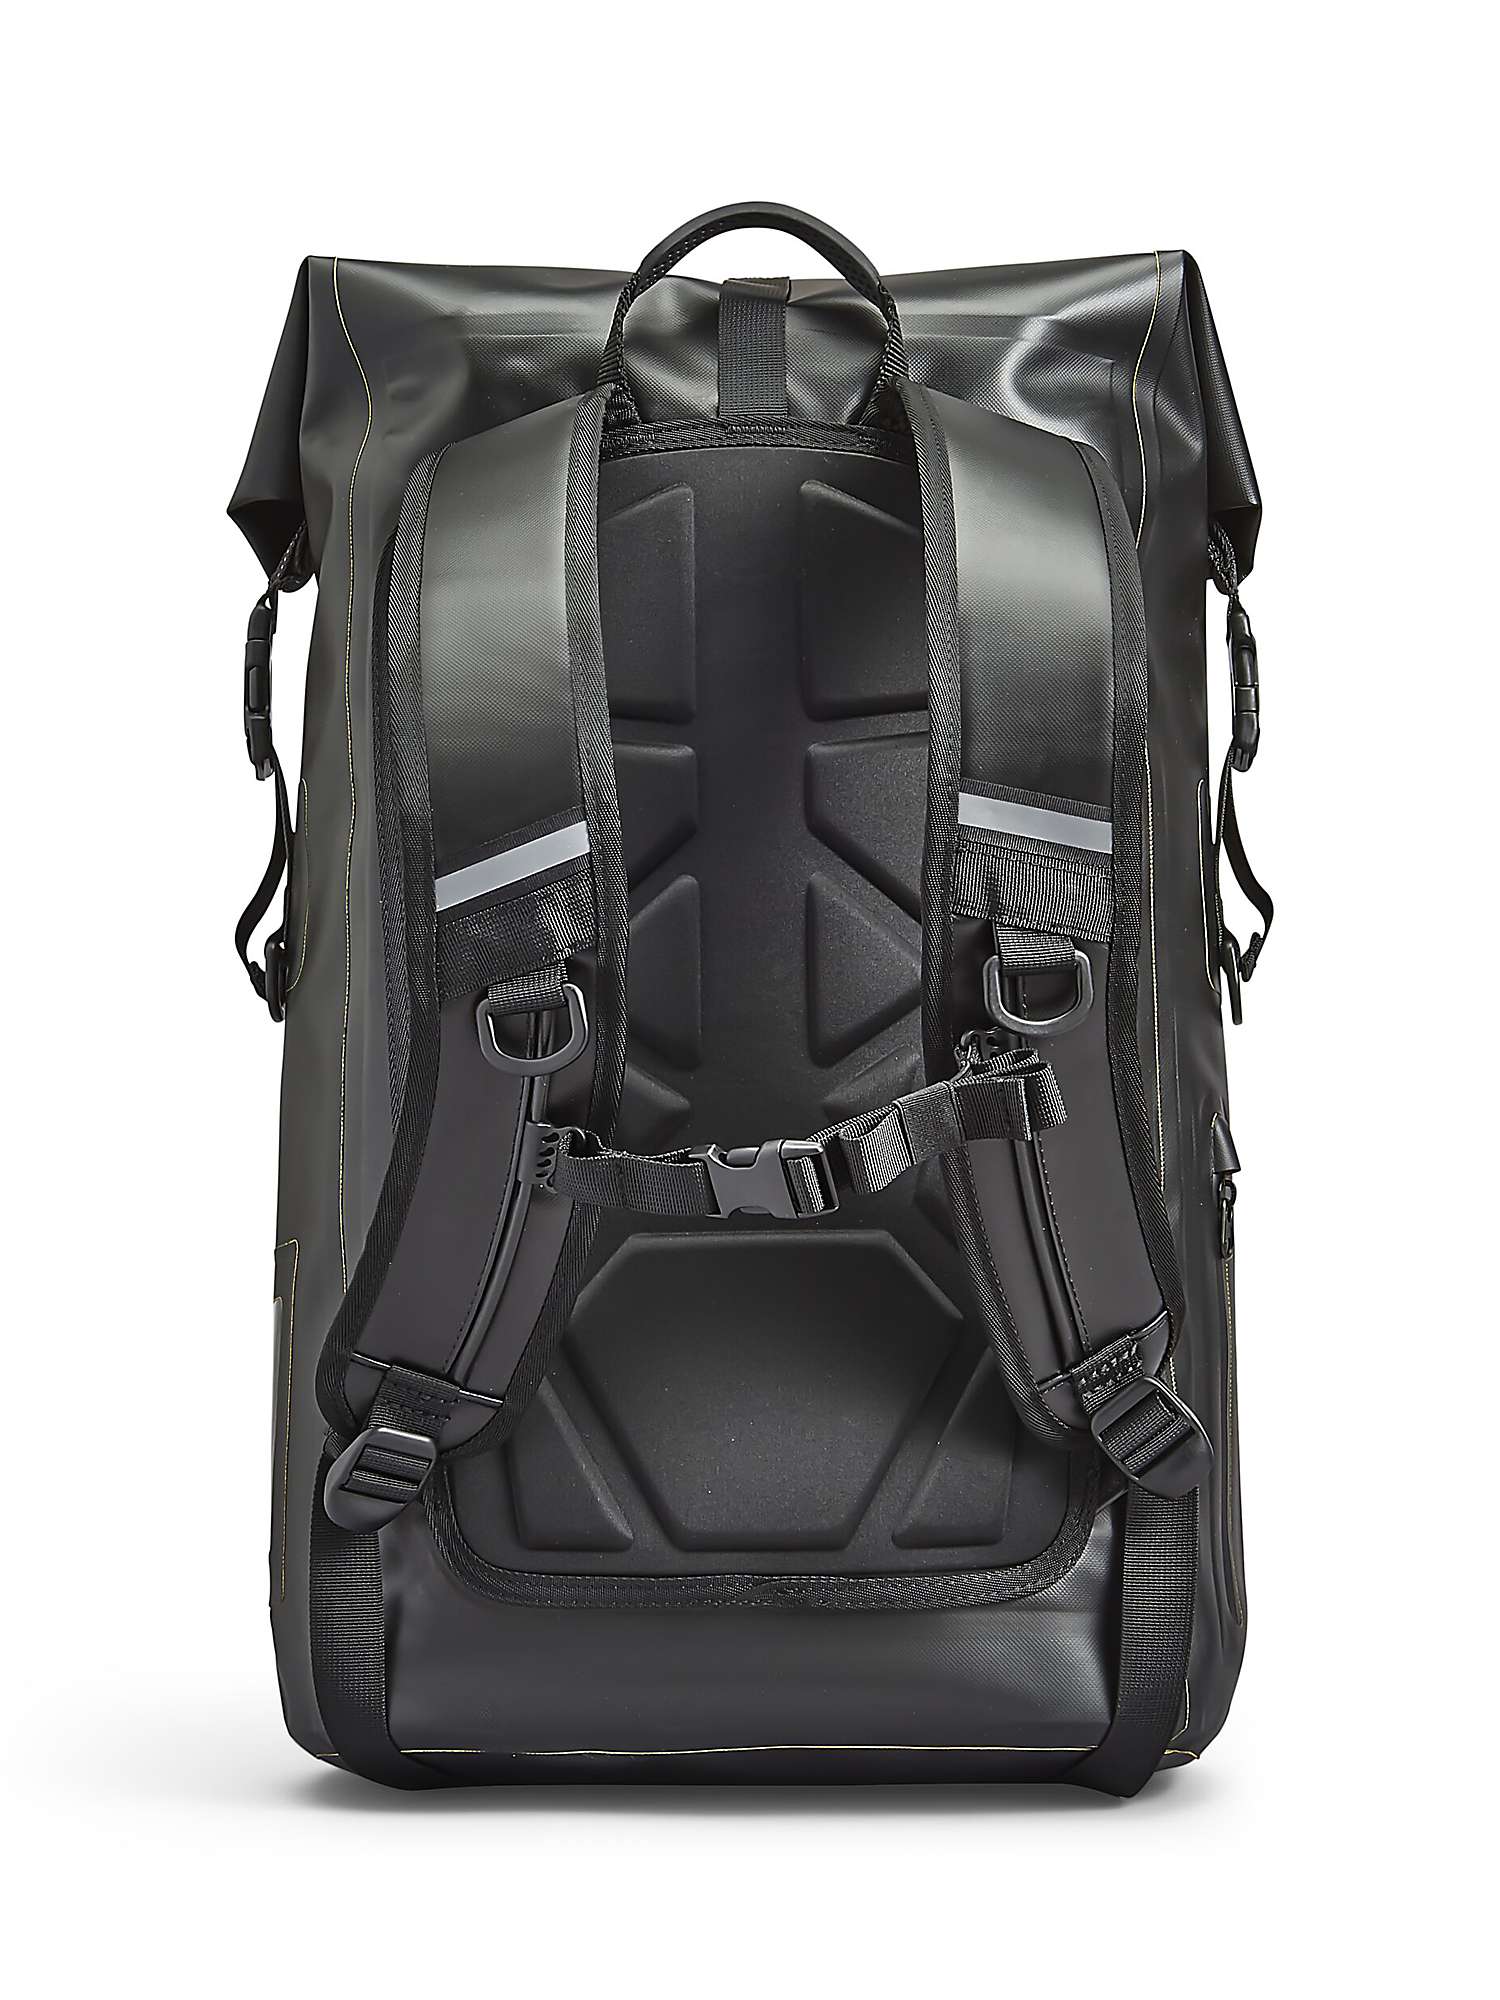 Buy Passenger The Tide 25L Backpack, Black Online at johnlewis.com